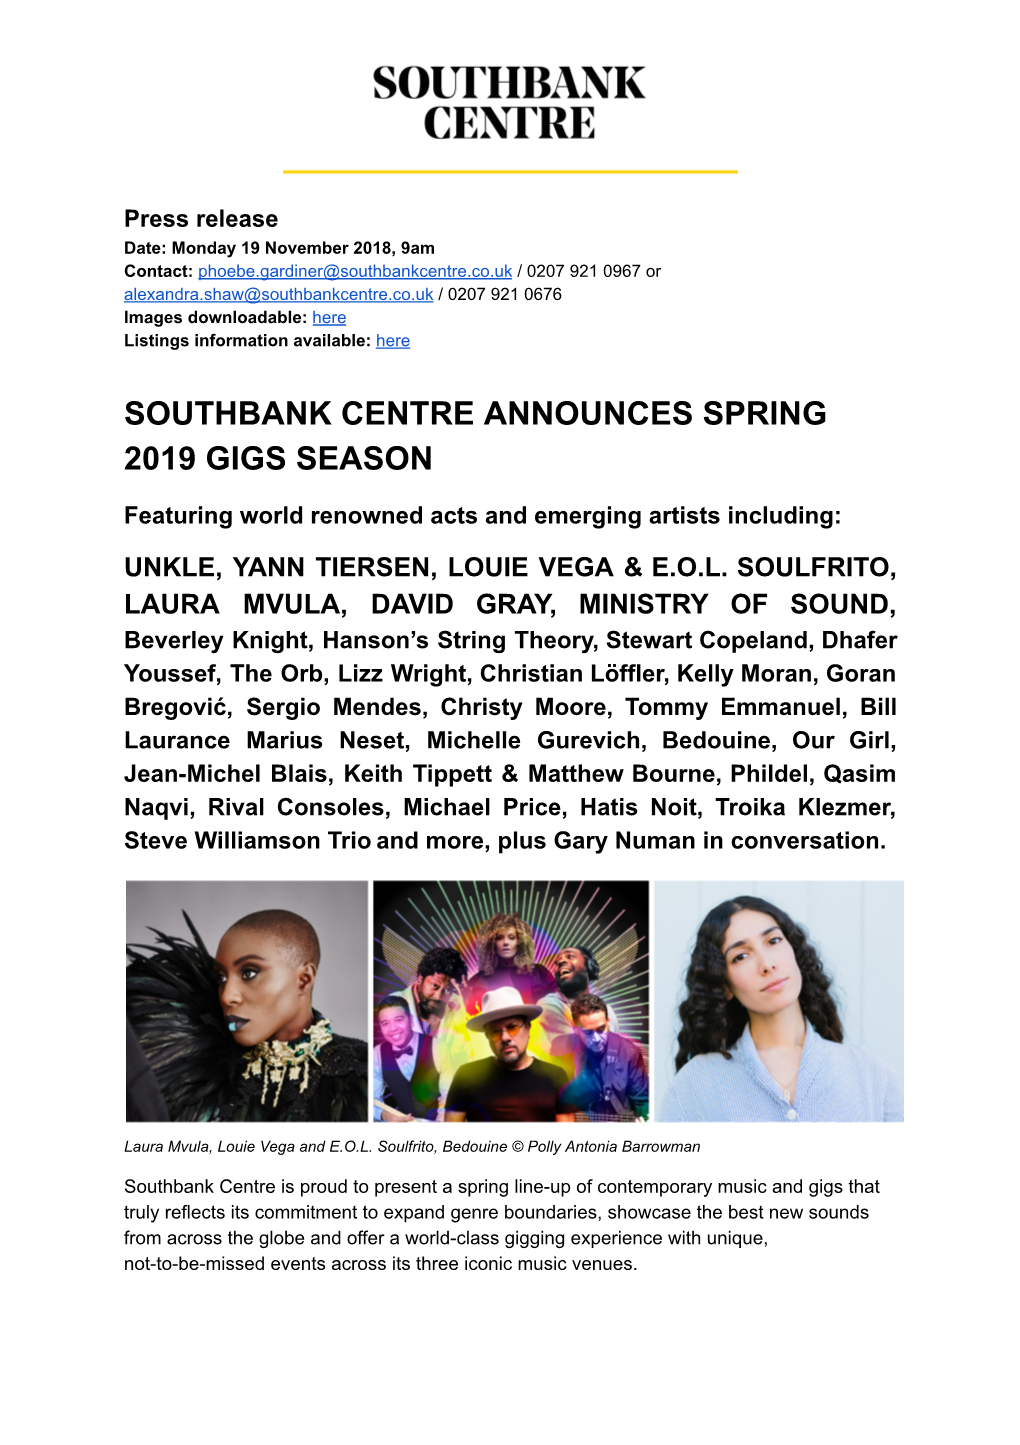 Southbank Centre Announces Spring 2019 Gigs Season